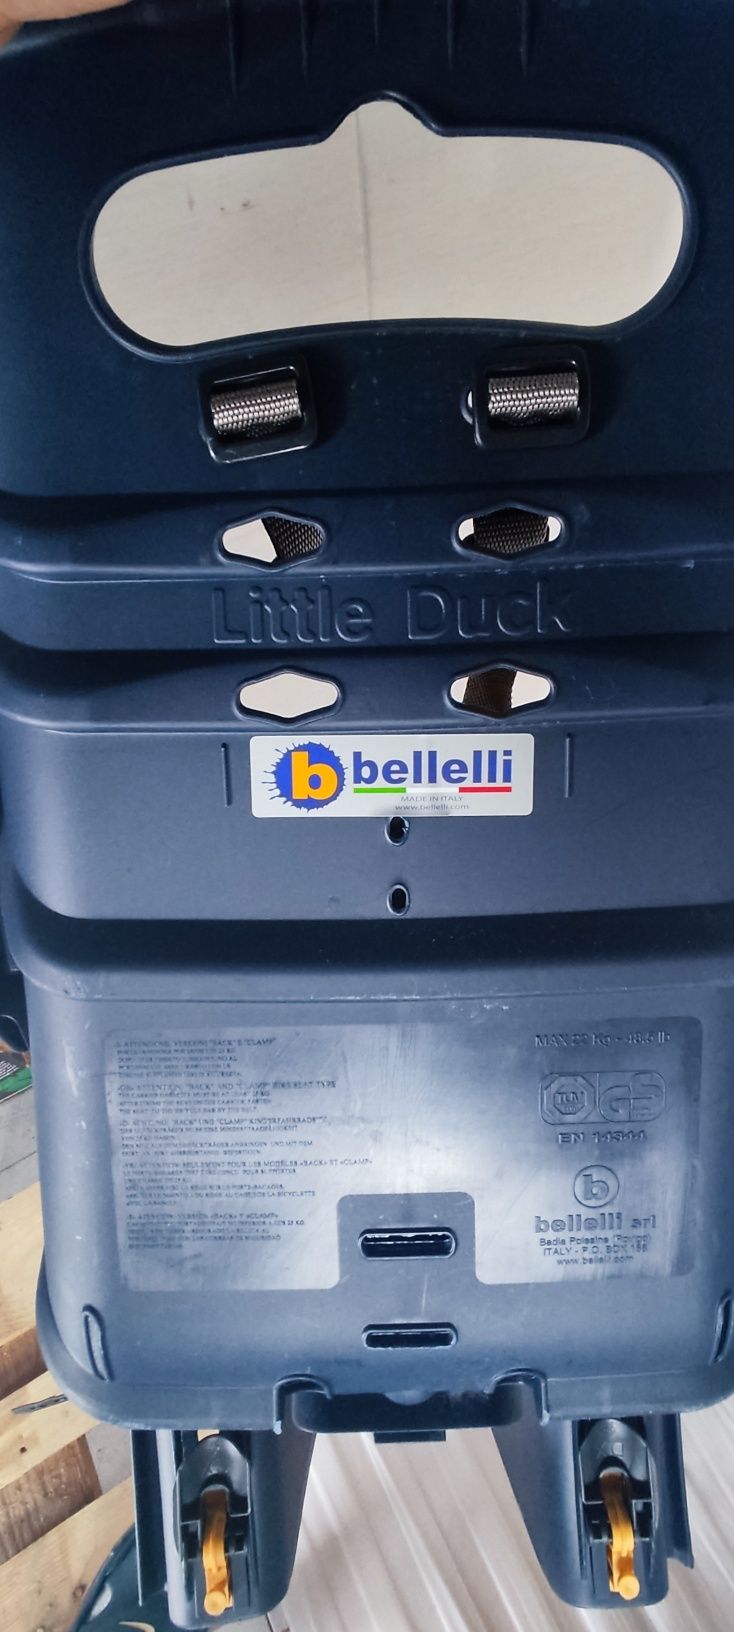 Fotelik rowerowy Bellelli Little Duck